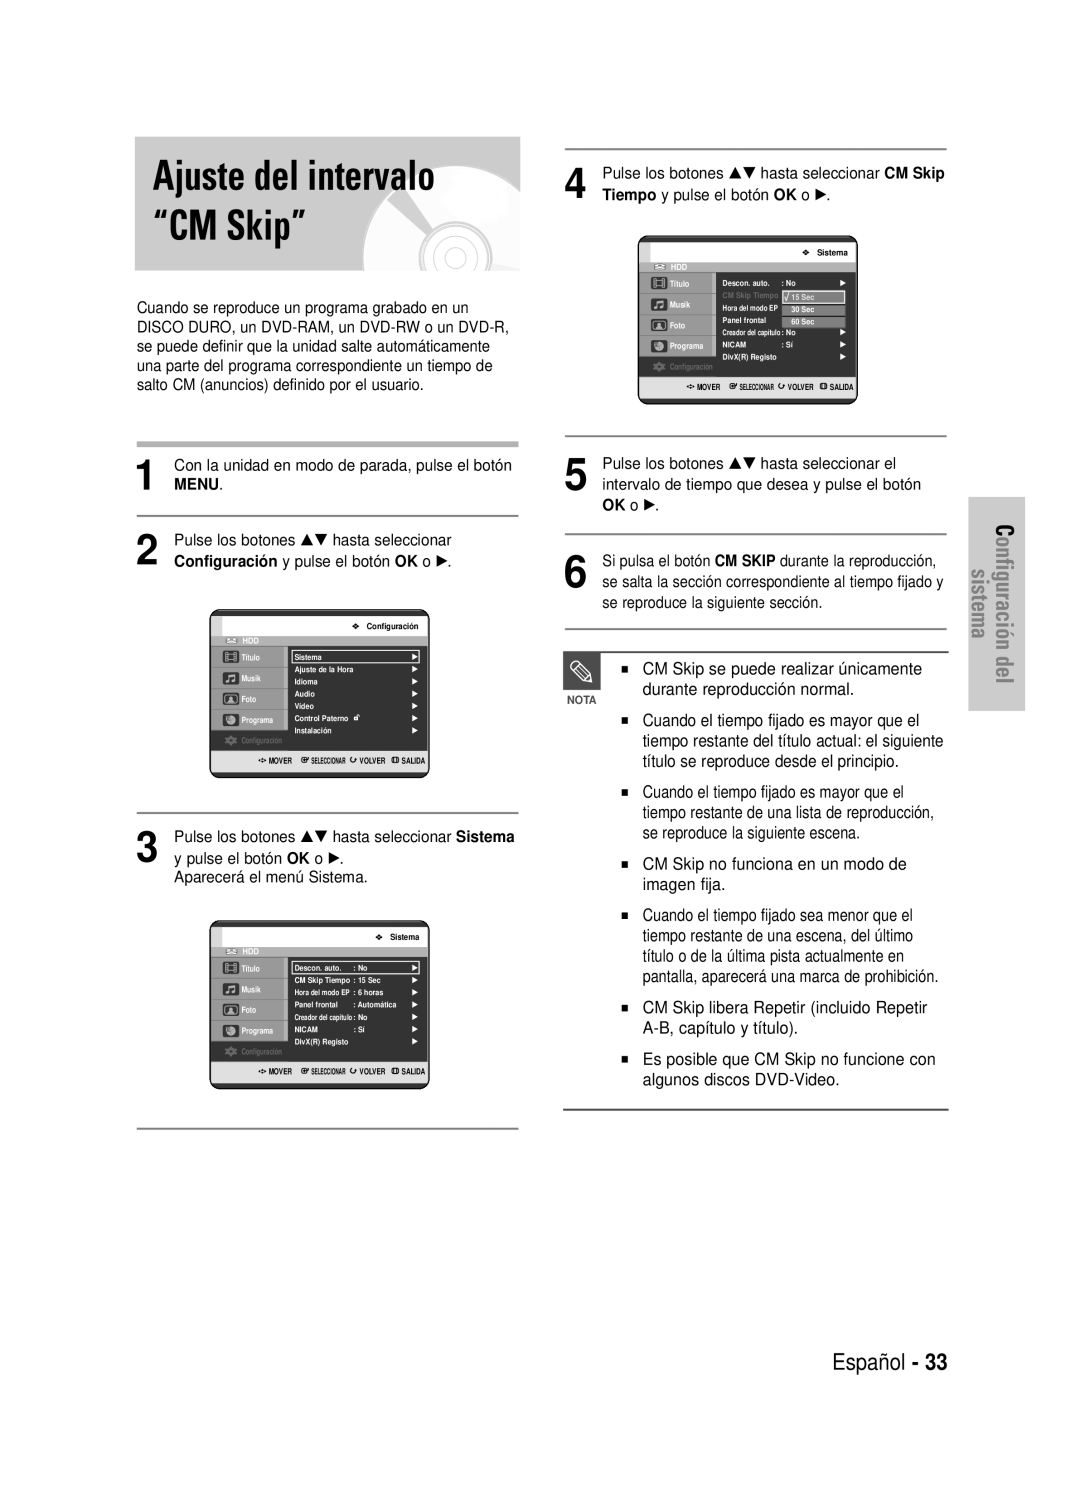 Samsung DVD-HR725/XEC Ajuste del intervalo “CM Skip”, Español, CM Skip se puede realizar únicamente, Menu, OK o √, sistema 